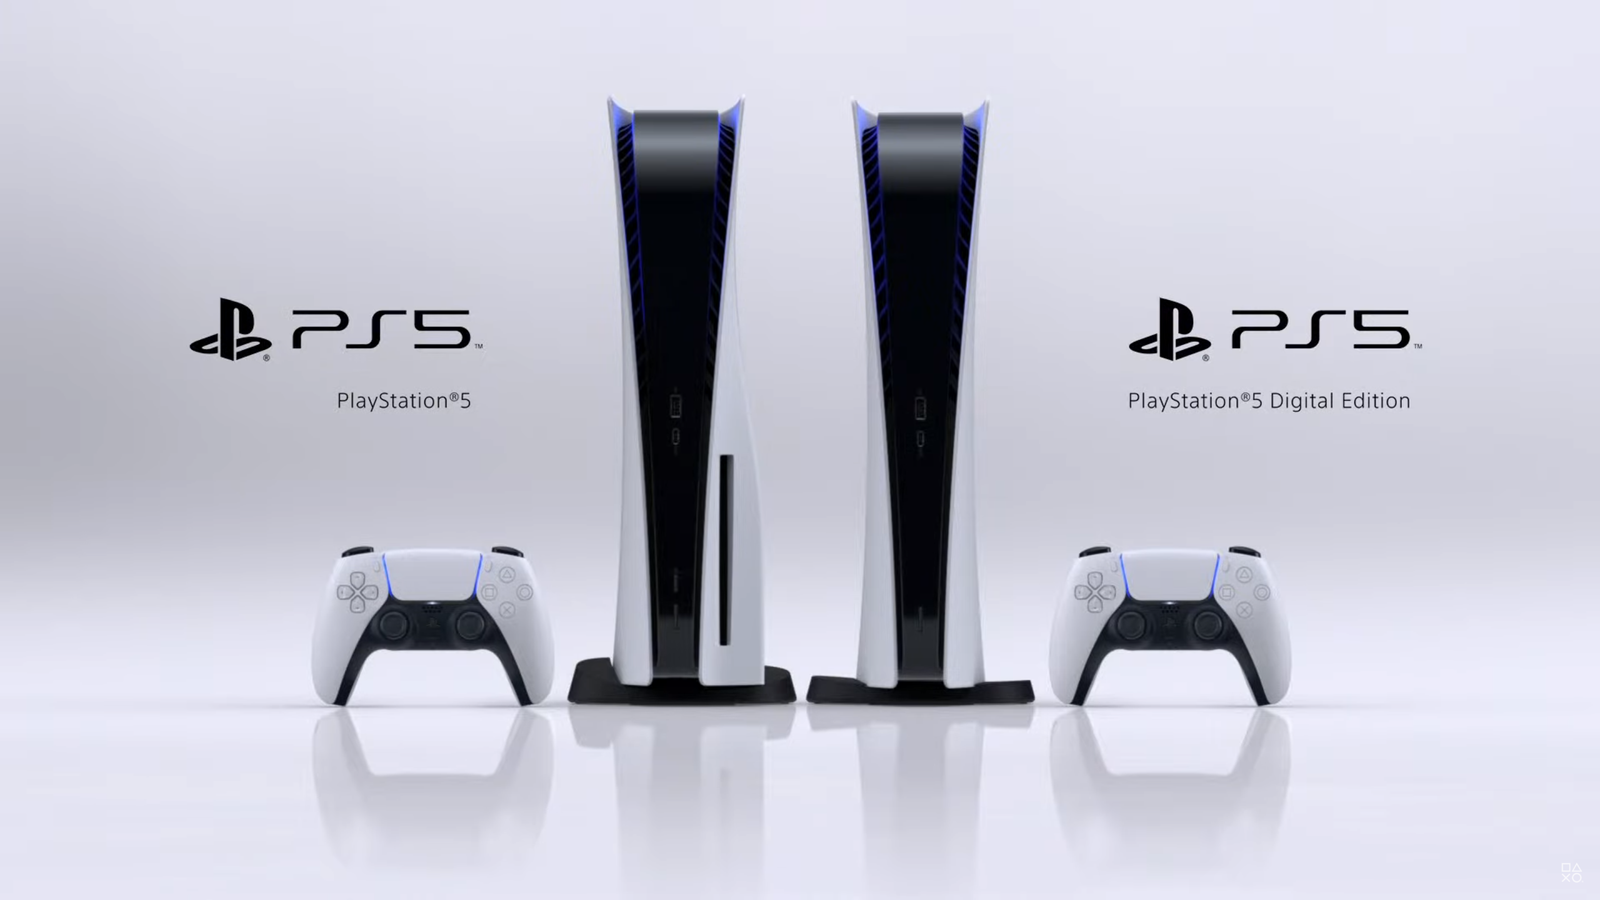 Sony med klar oppfordring: PS5 får ikke selges i butikk i 2020